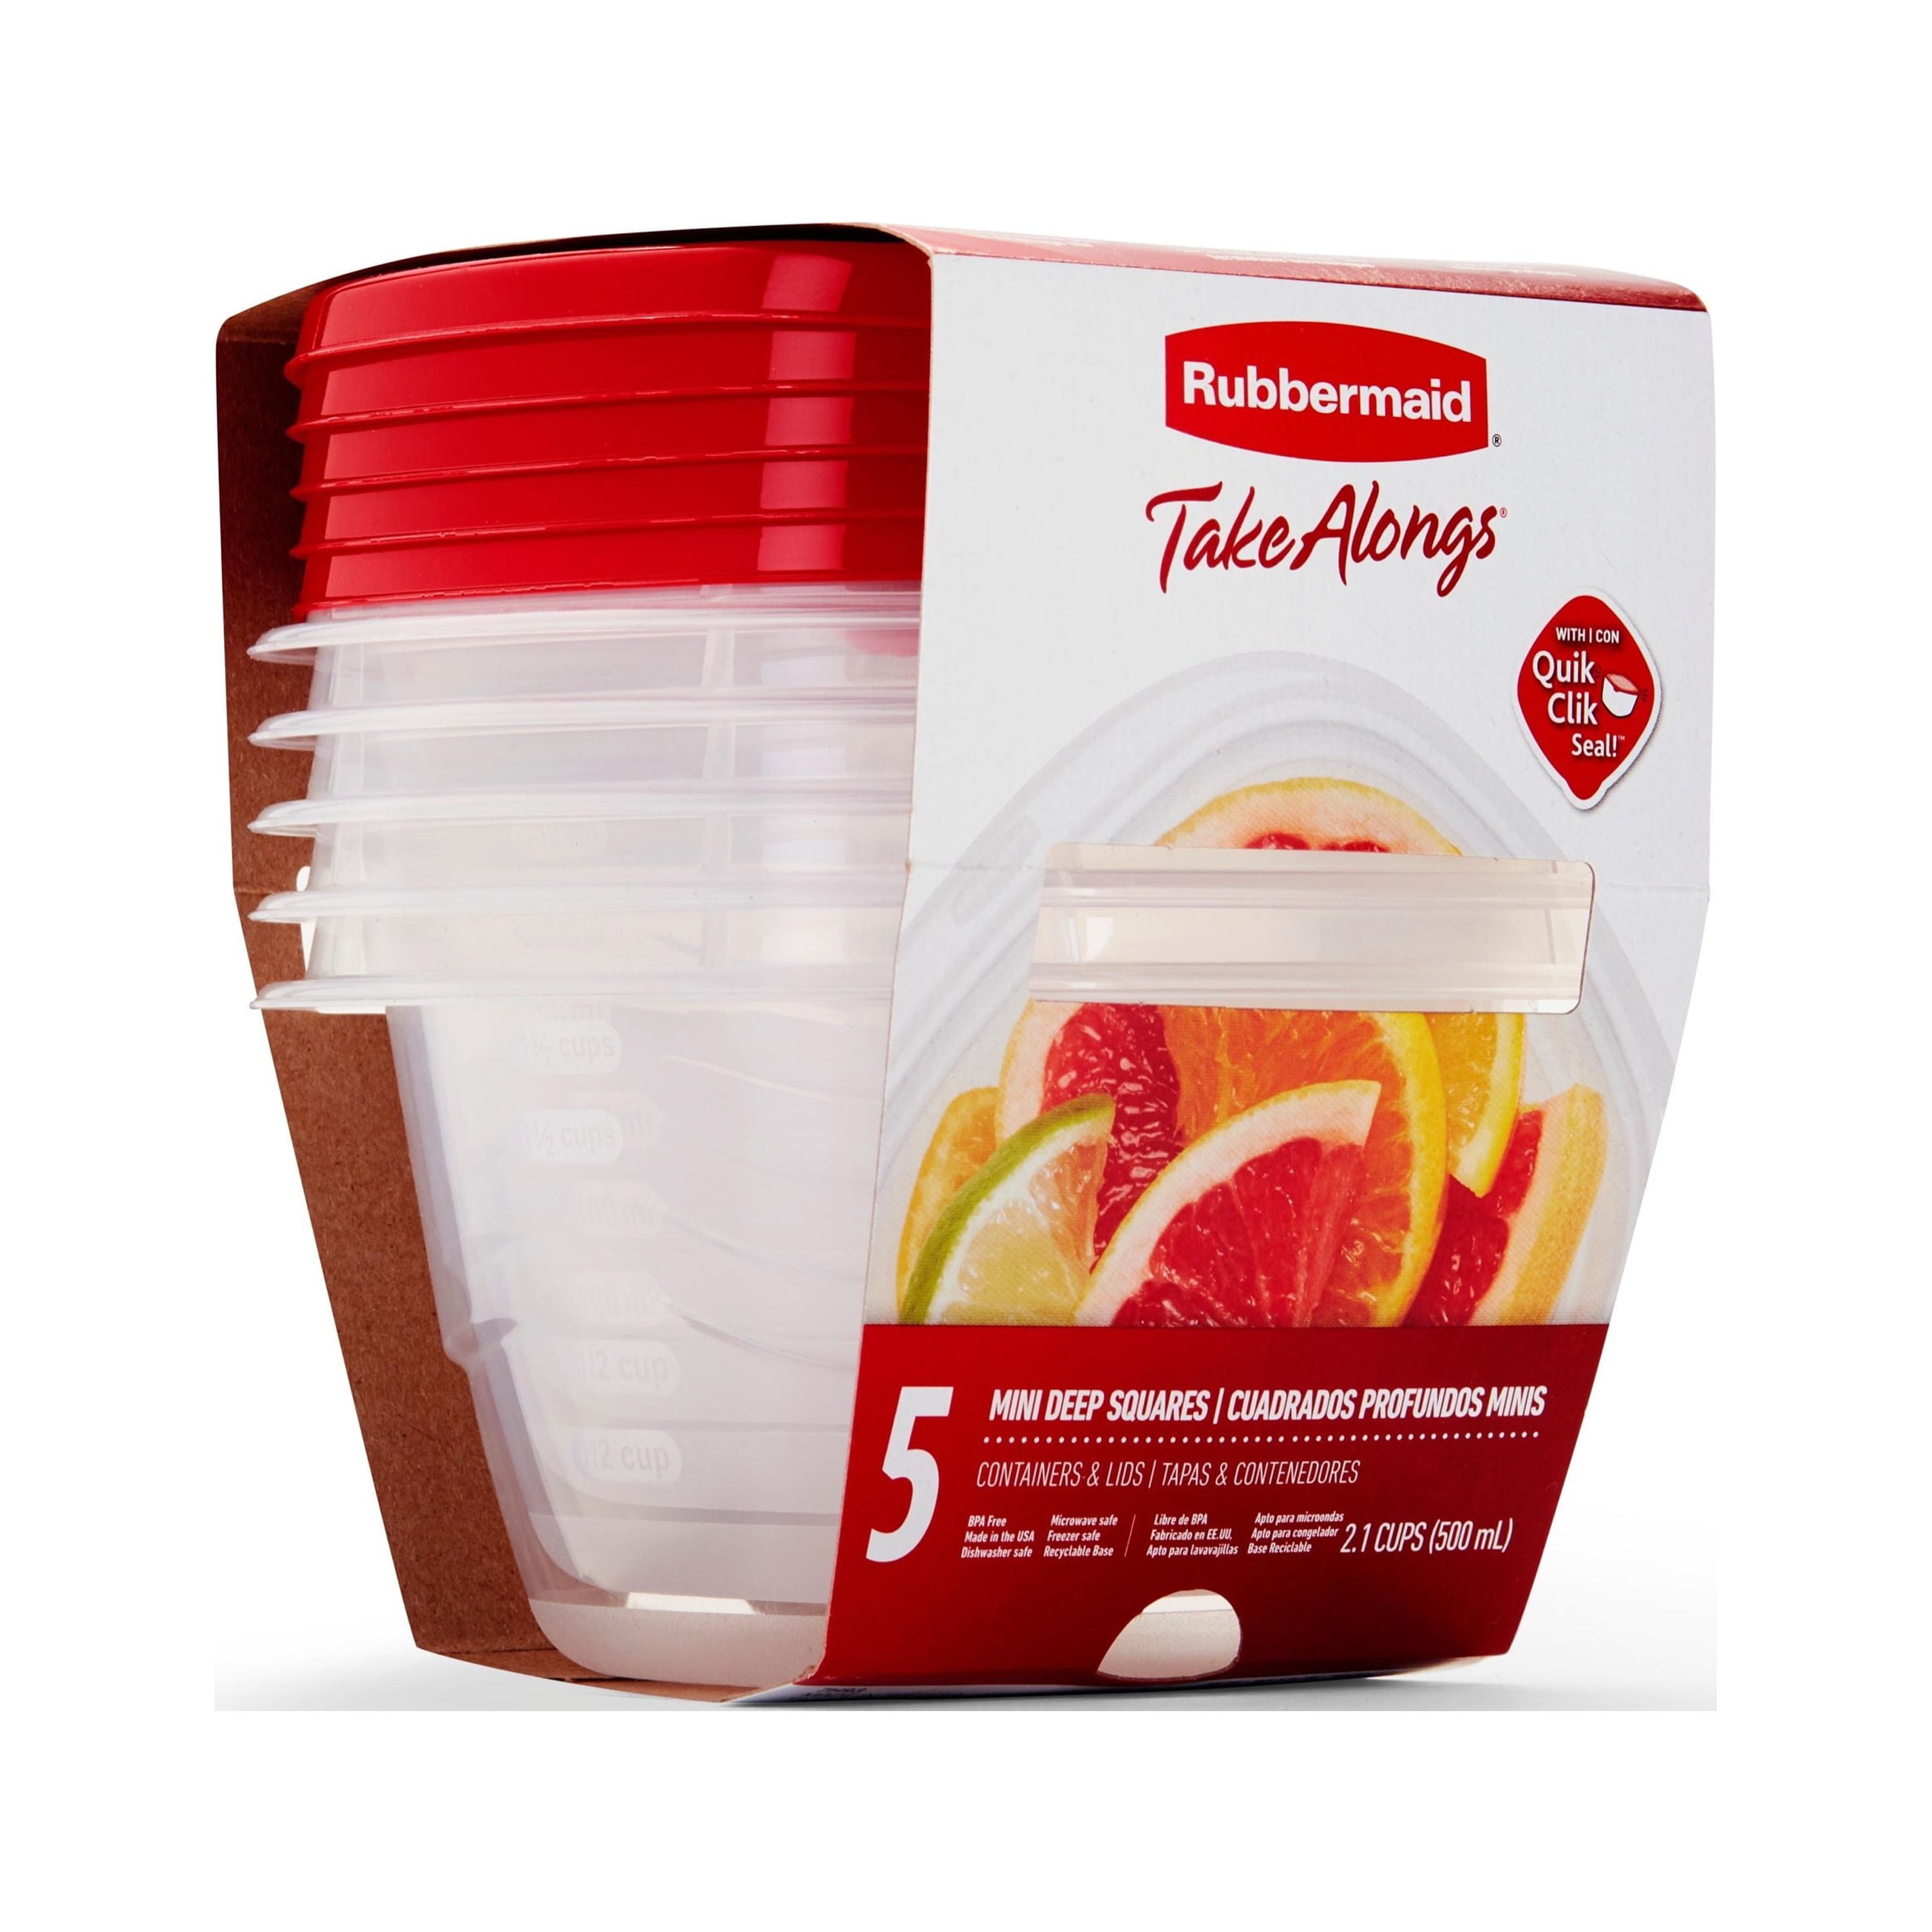 Rubbermaid TakeAlongs Twist-&-Seal 2.1 Cup Meal Prep Food Storage